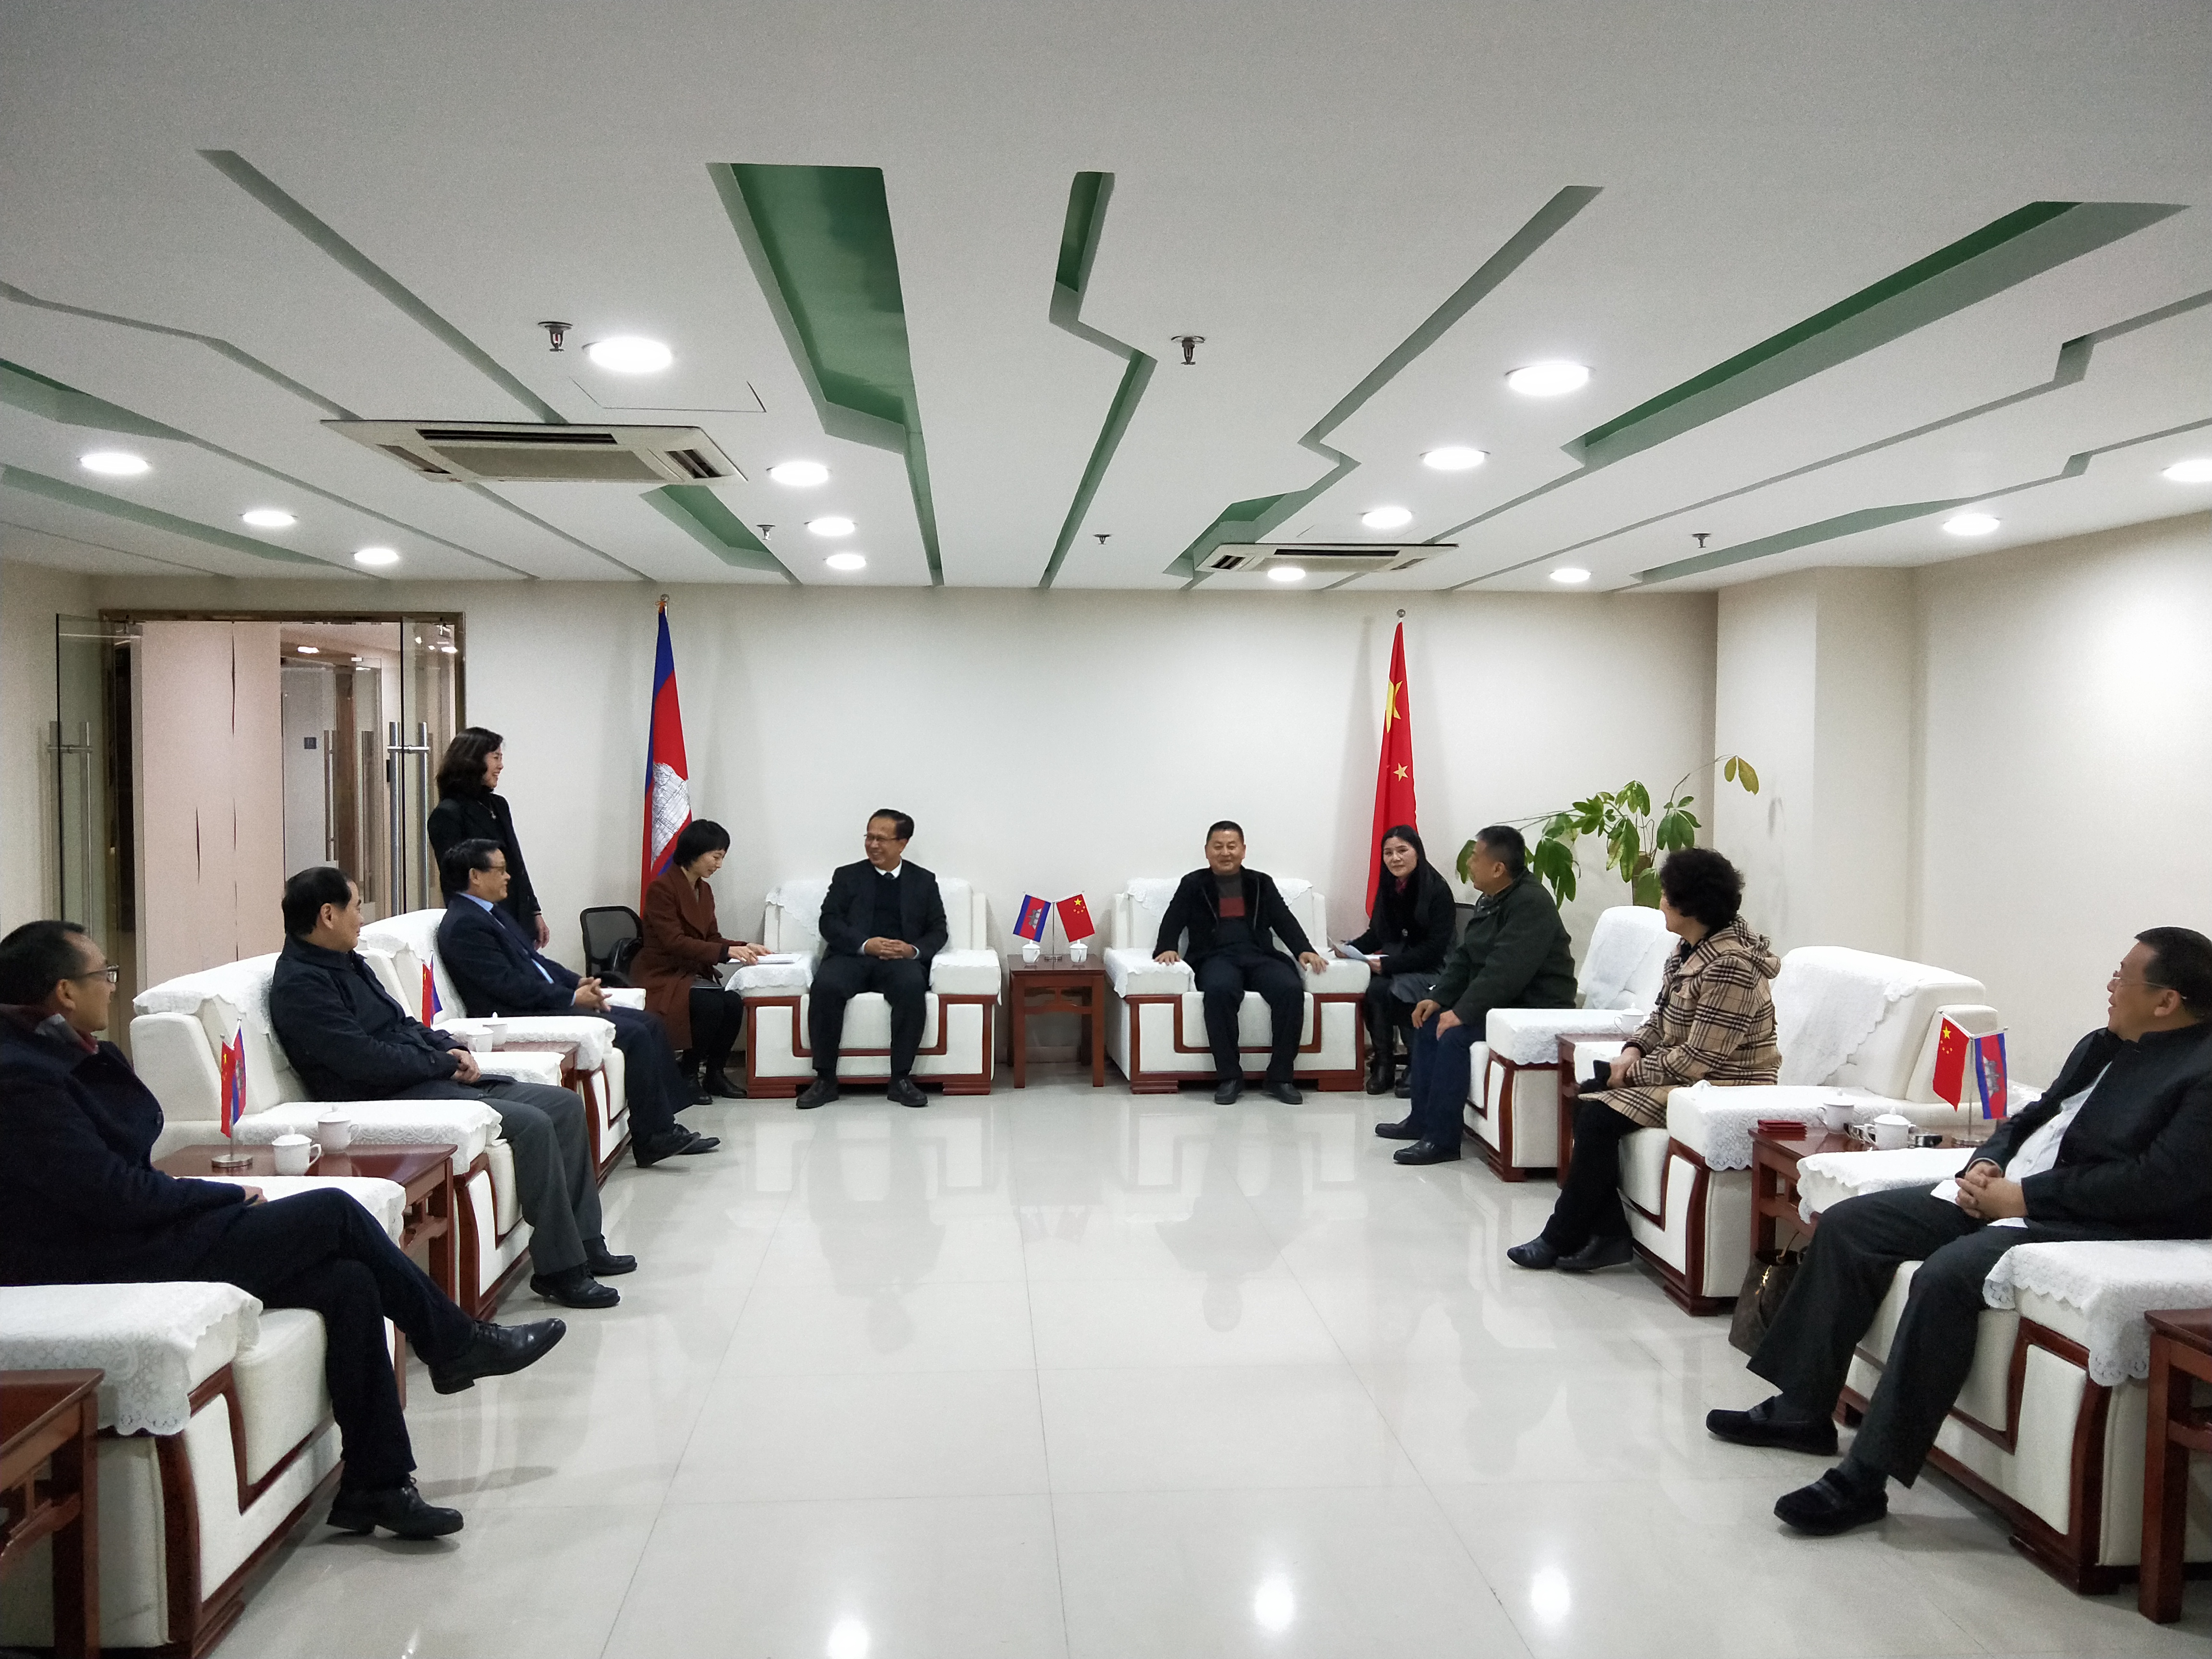 联合会组团赴柬埔寨考察受到柬埔寨副首相雍才宁阁下热情欢迎